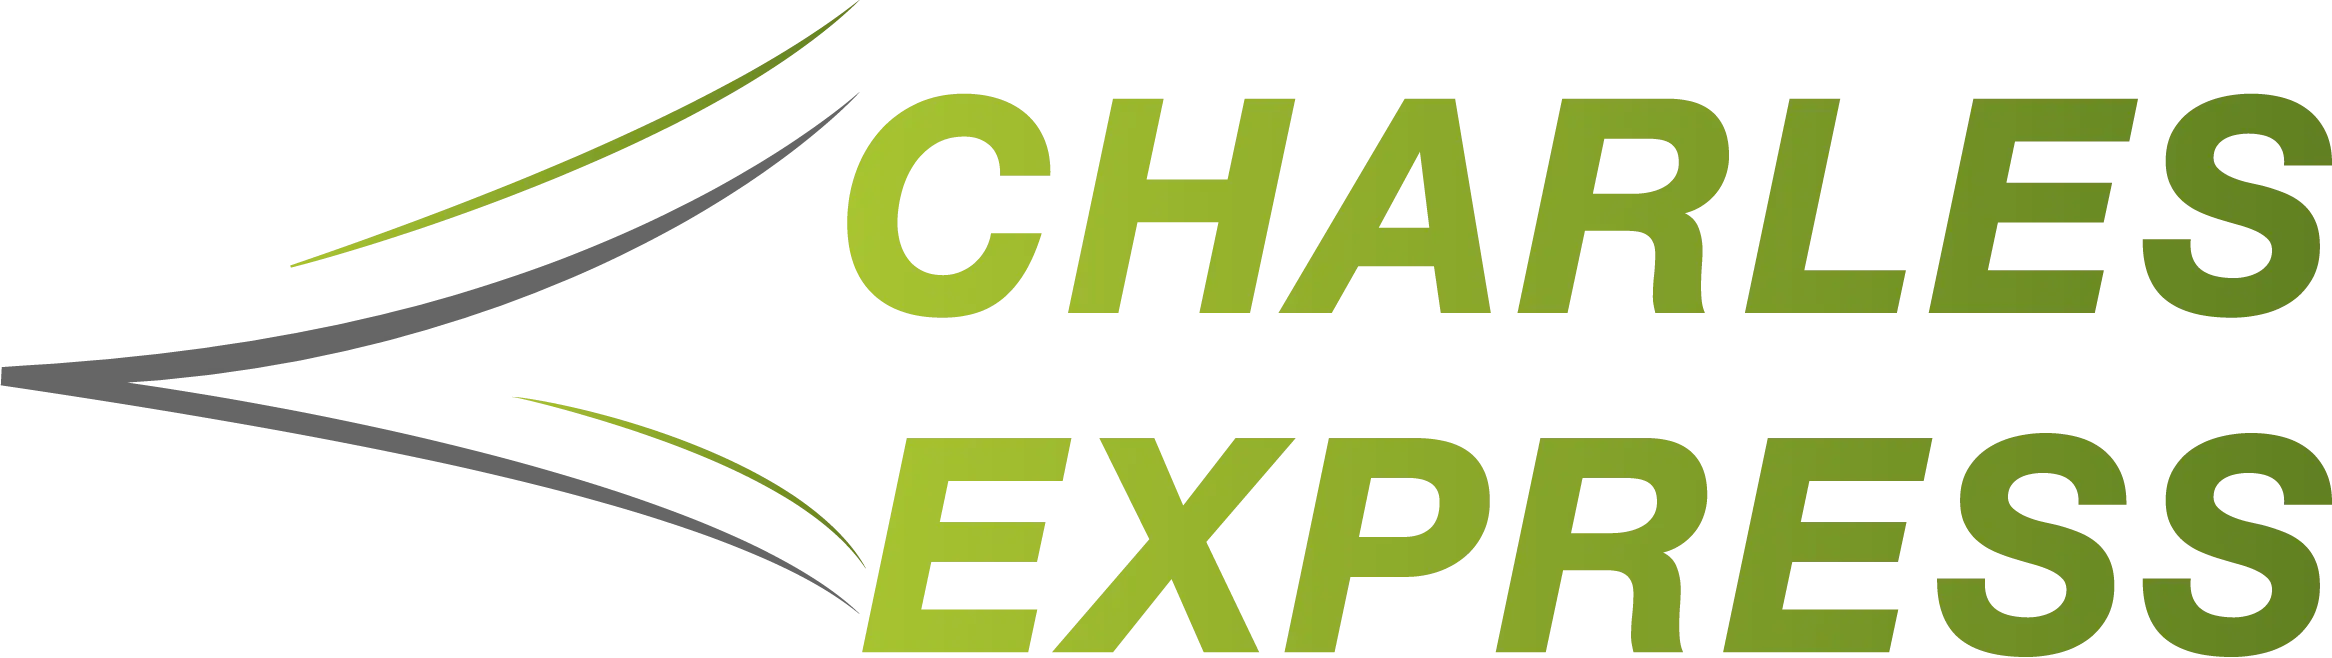 Charles_Express